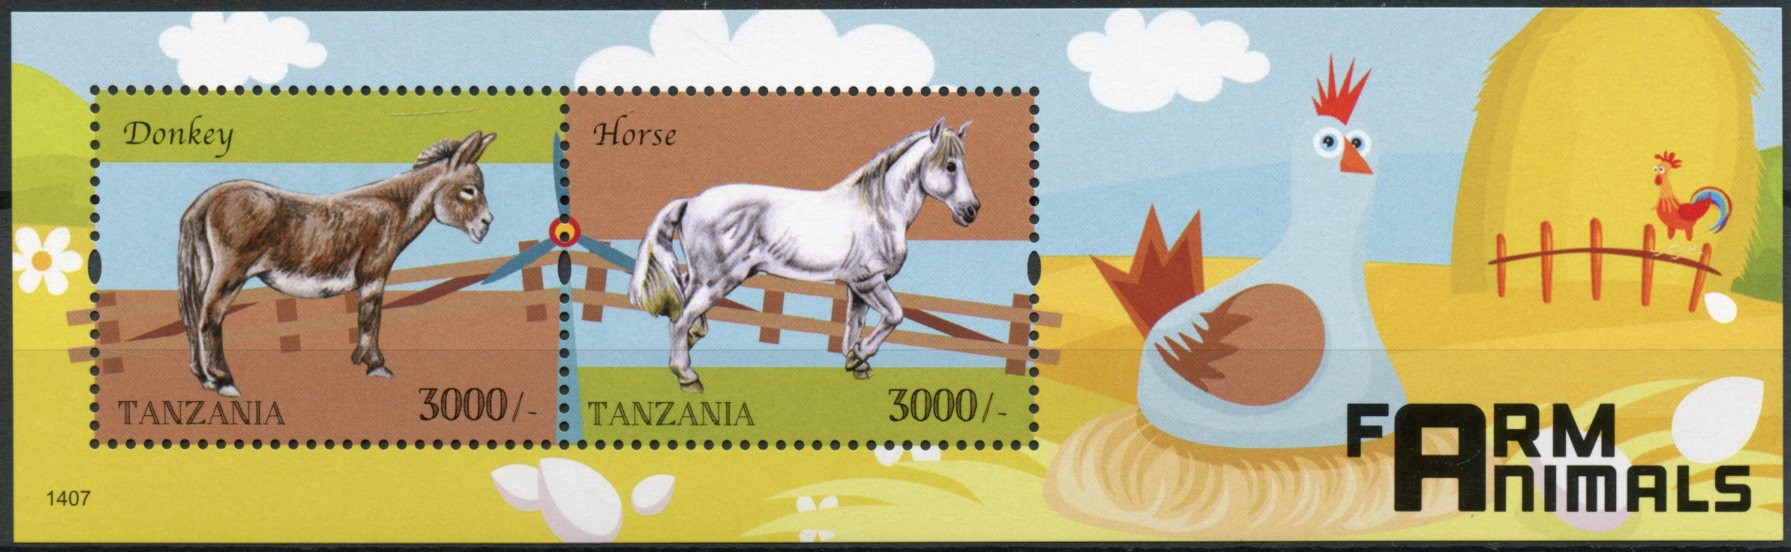 Tanzania 2014 MNH Farm Animals 2v S/S II Donkey Horse